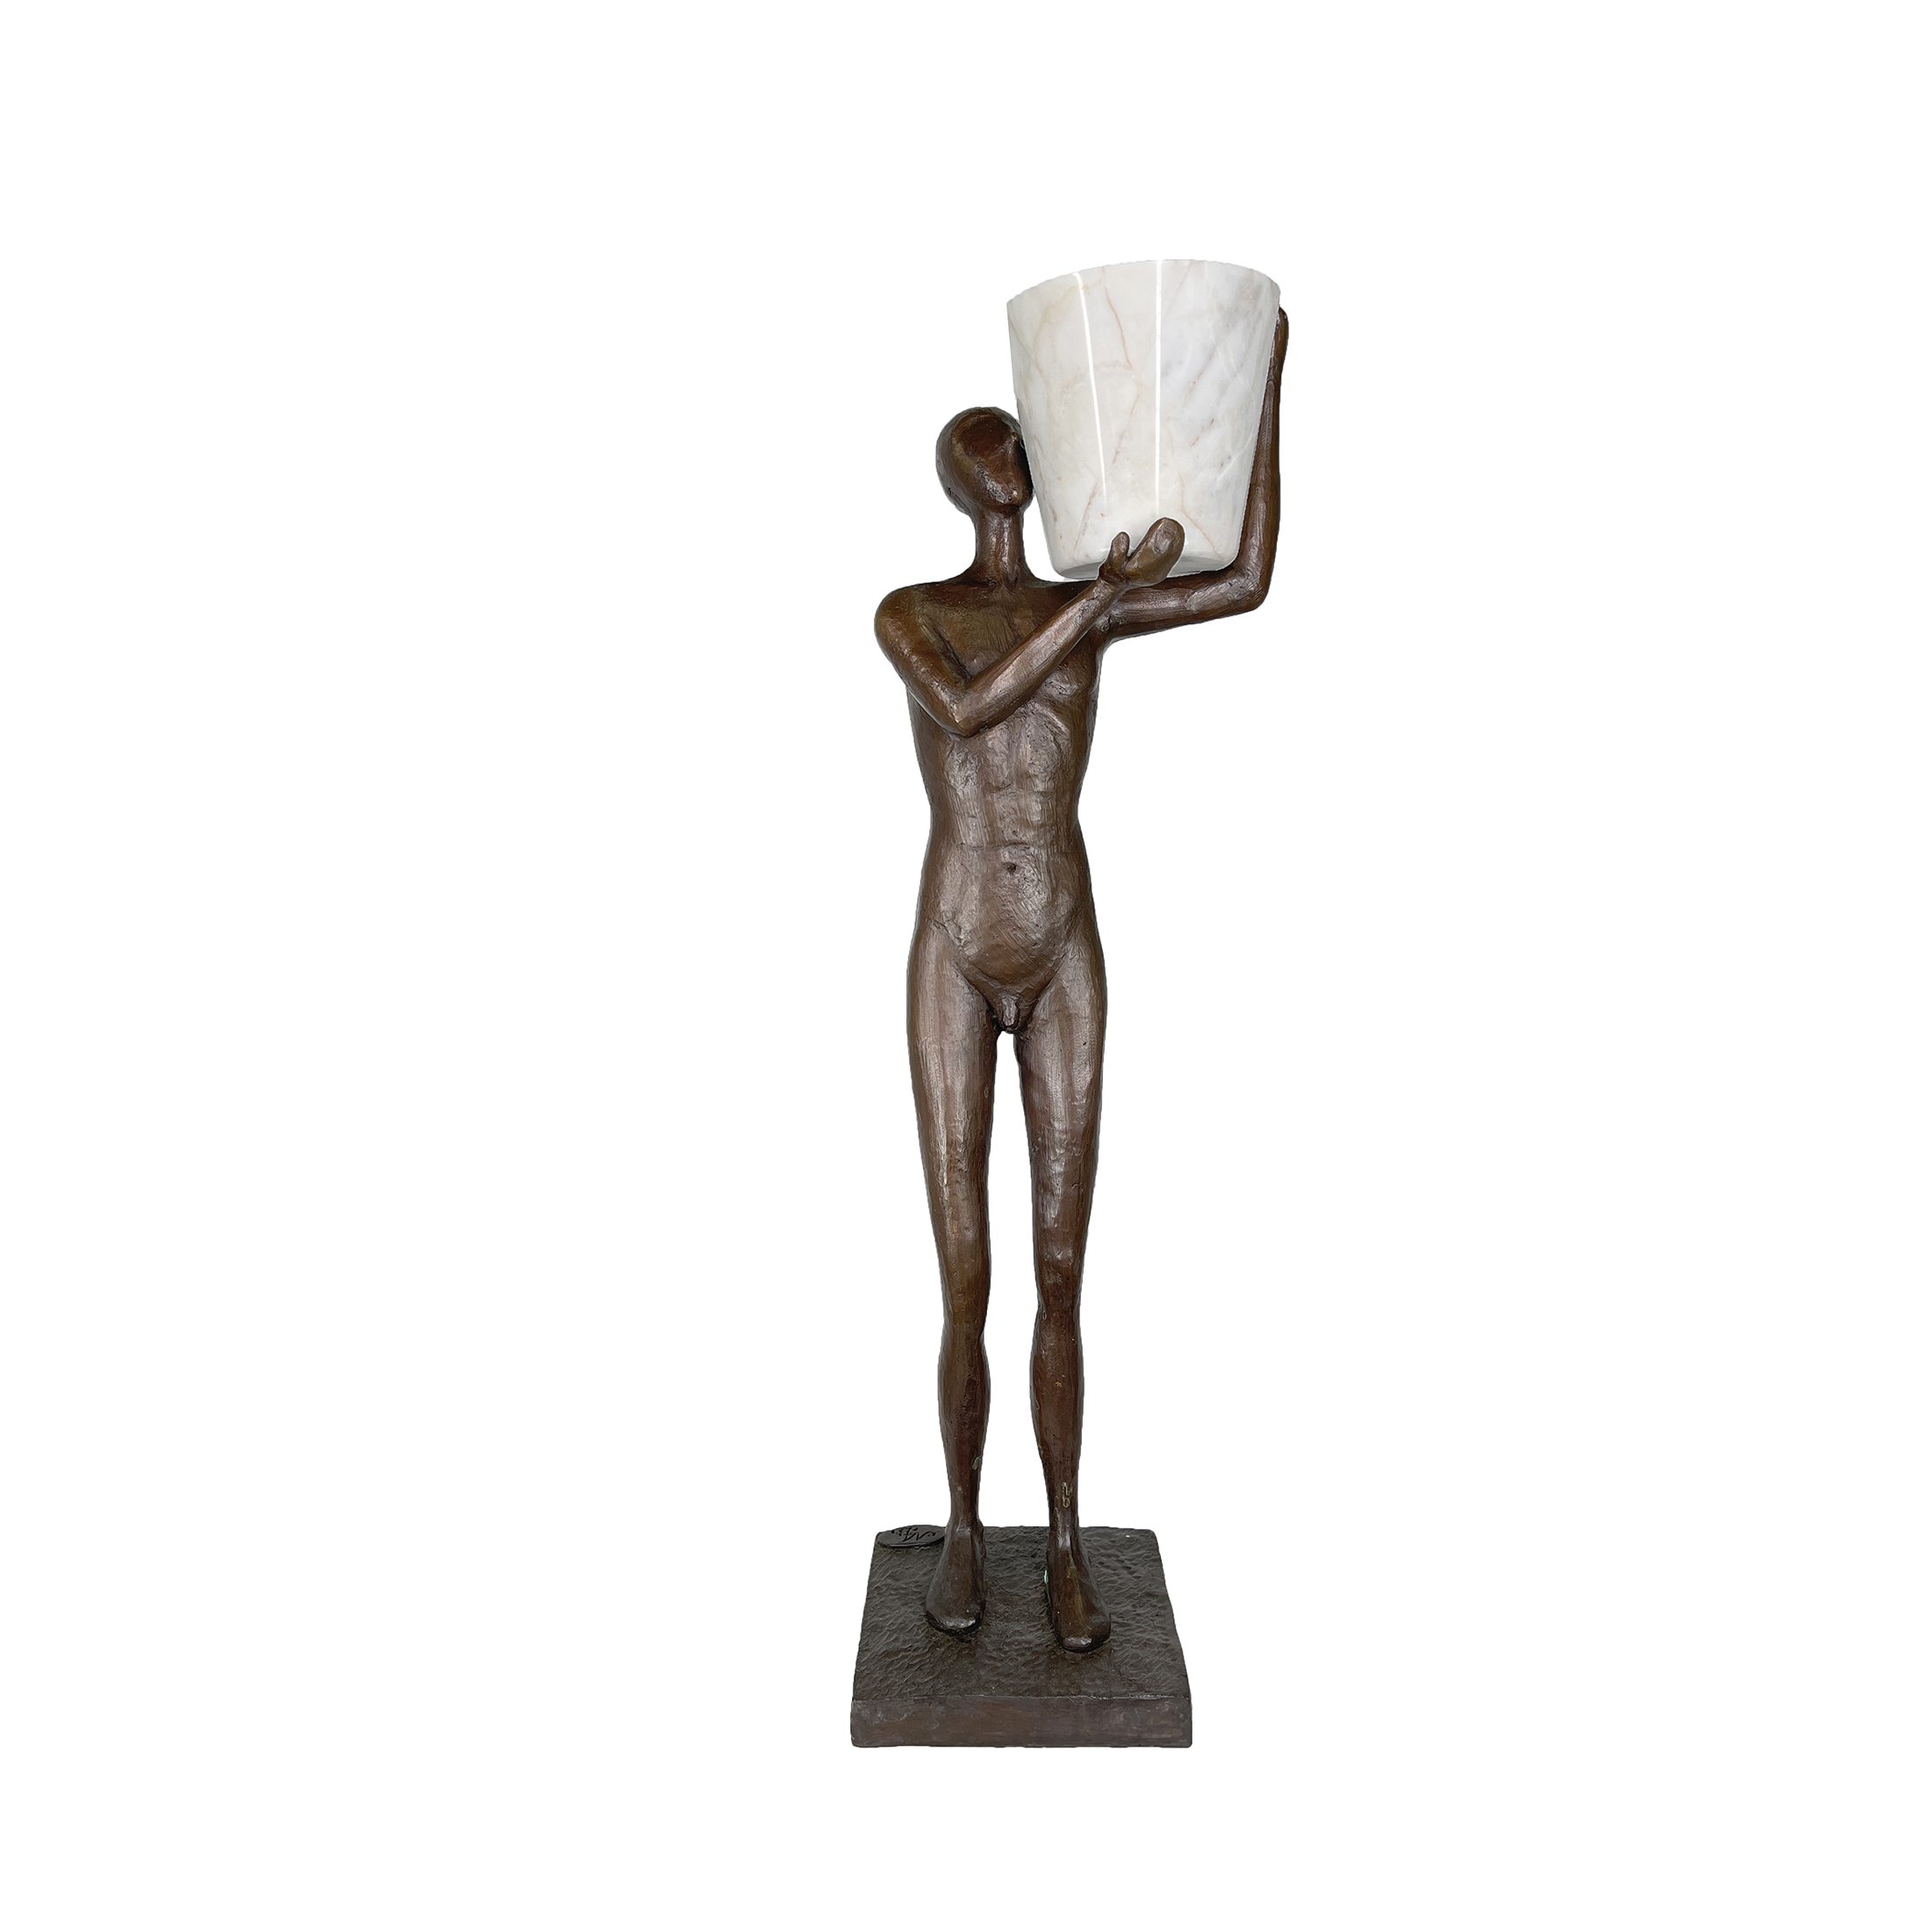 SRB40012 Bronze Modern Standing Man holding Pot Sculpture by Metropolitan Galleries Inc